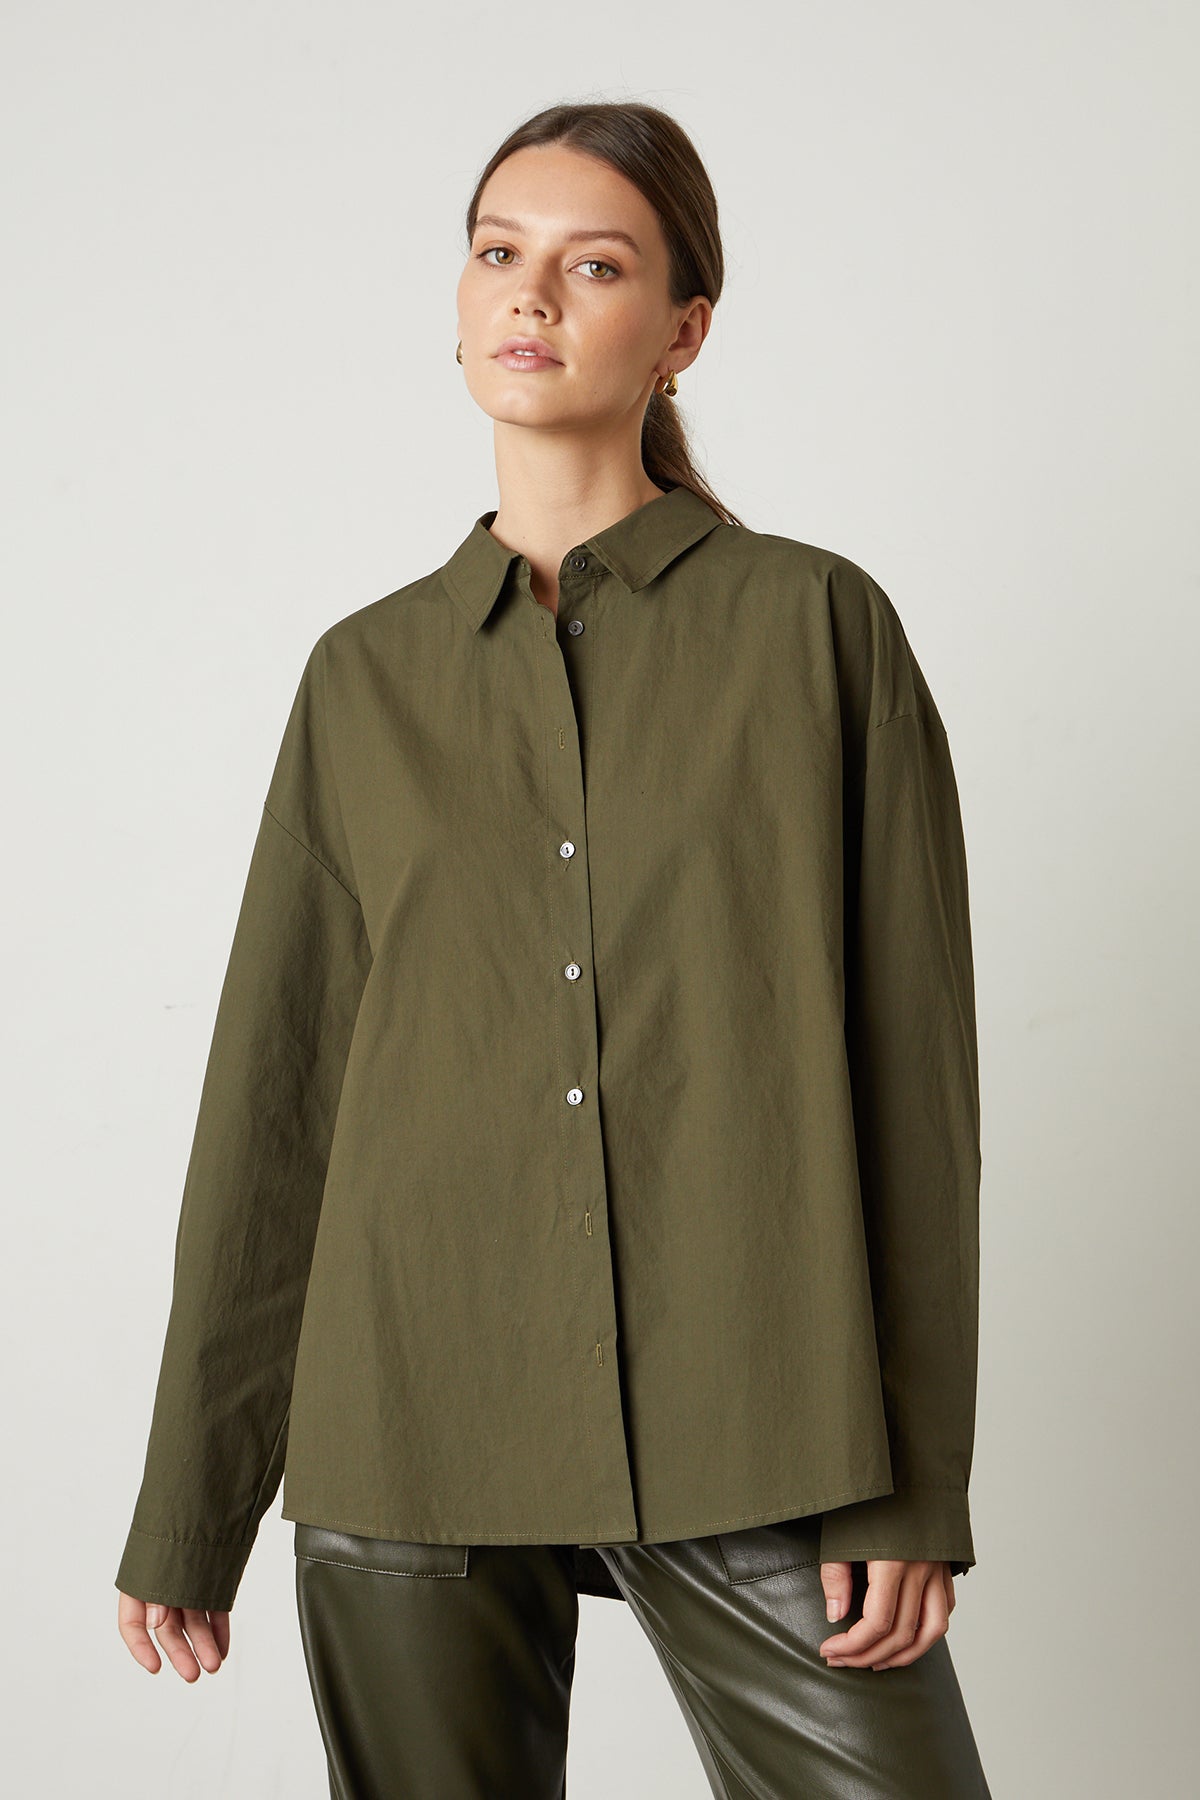   Dakota Button-Up Shirt in olivine front 